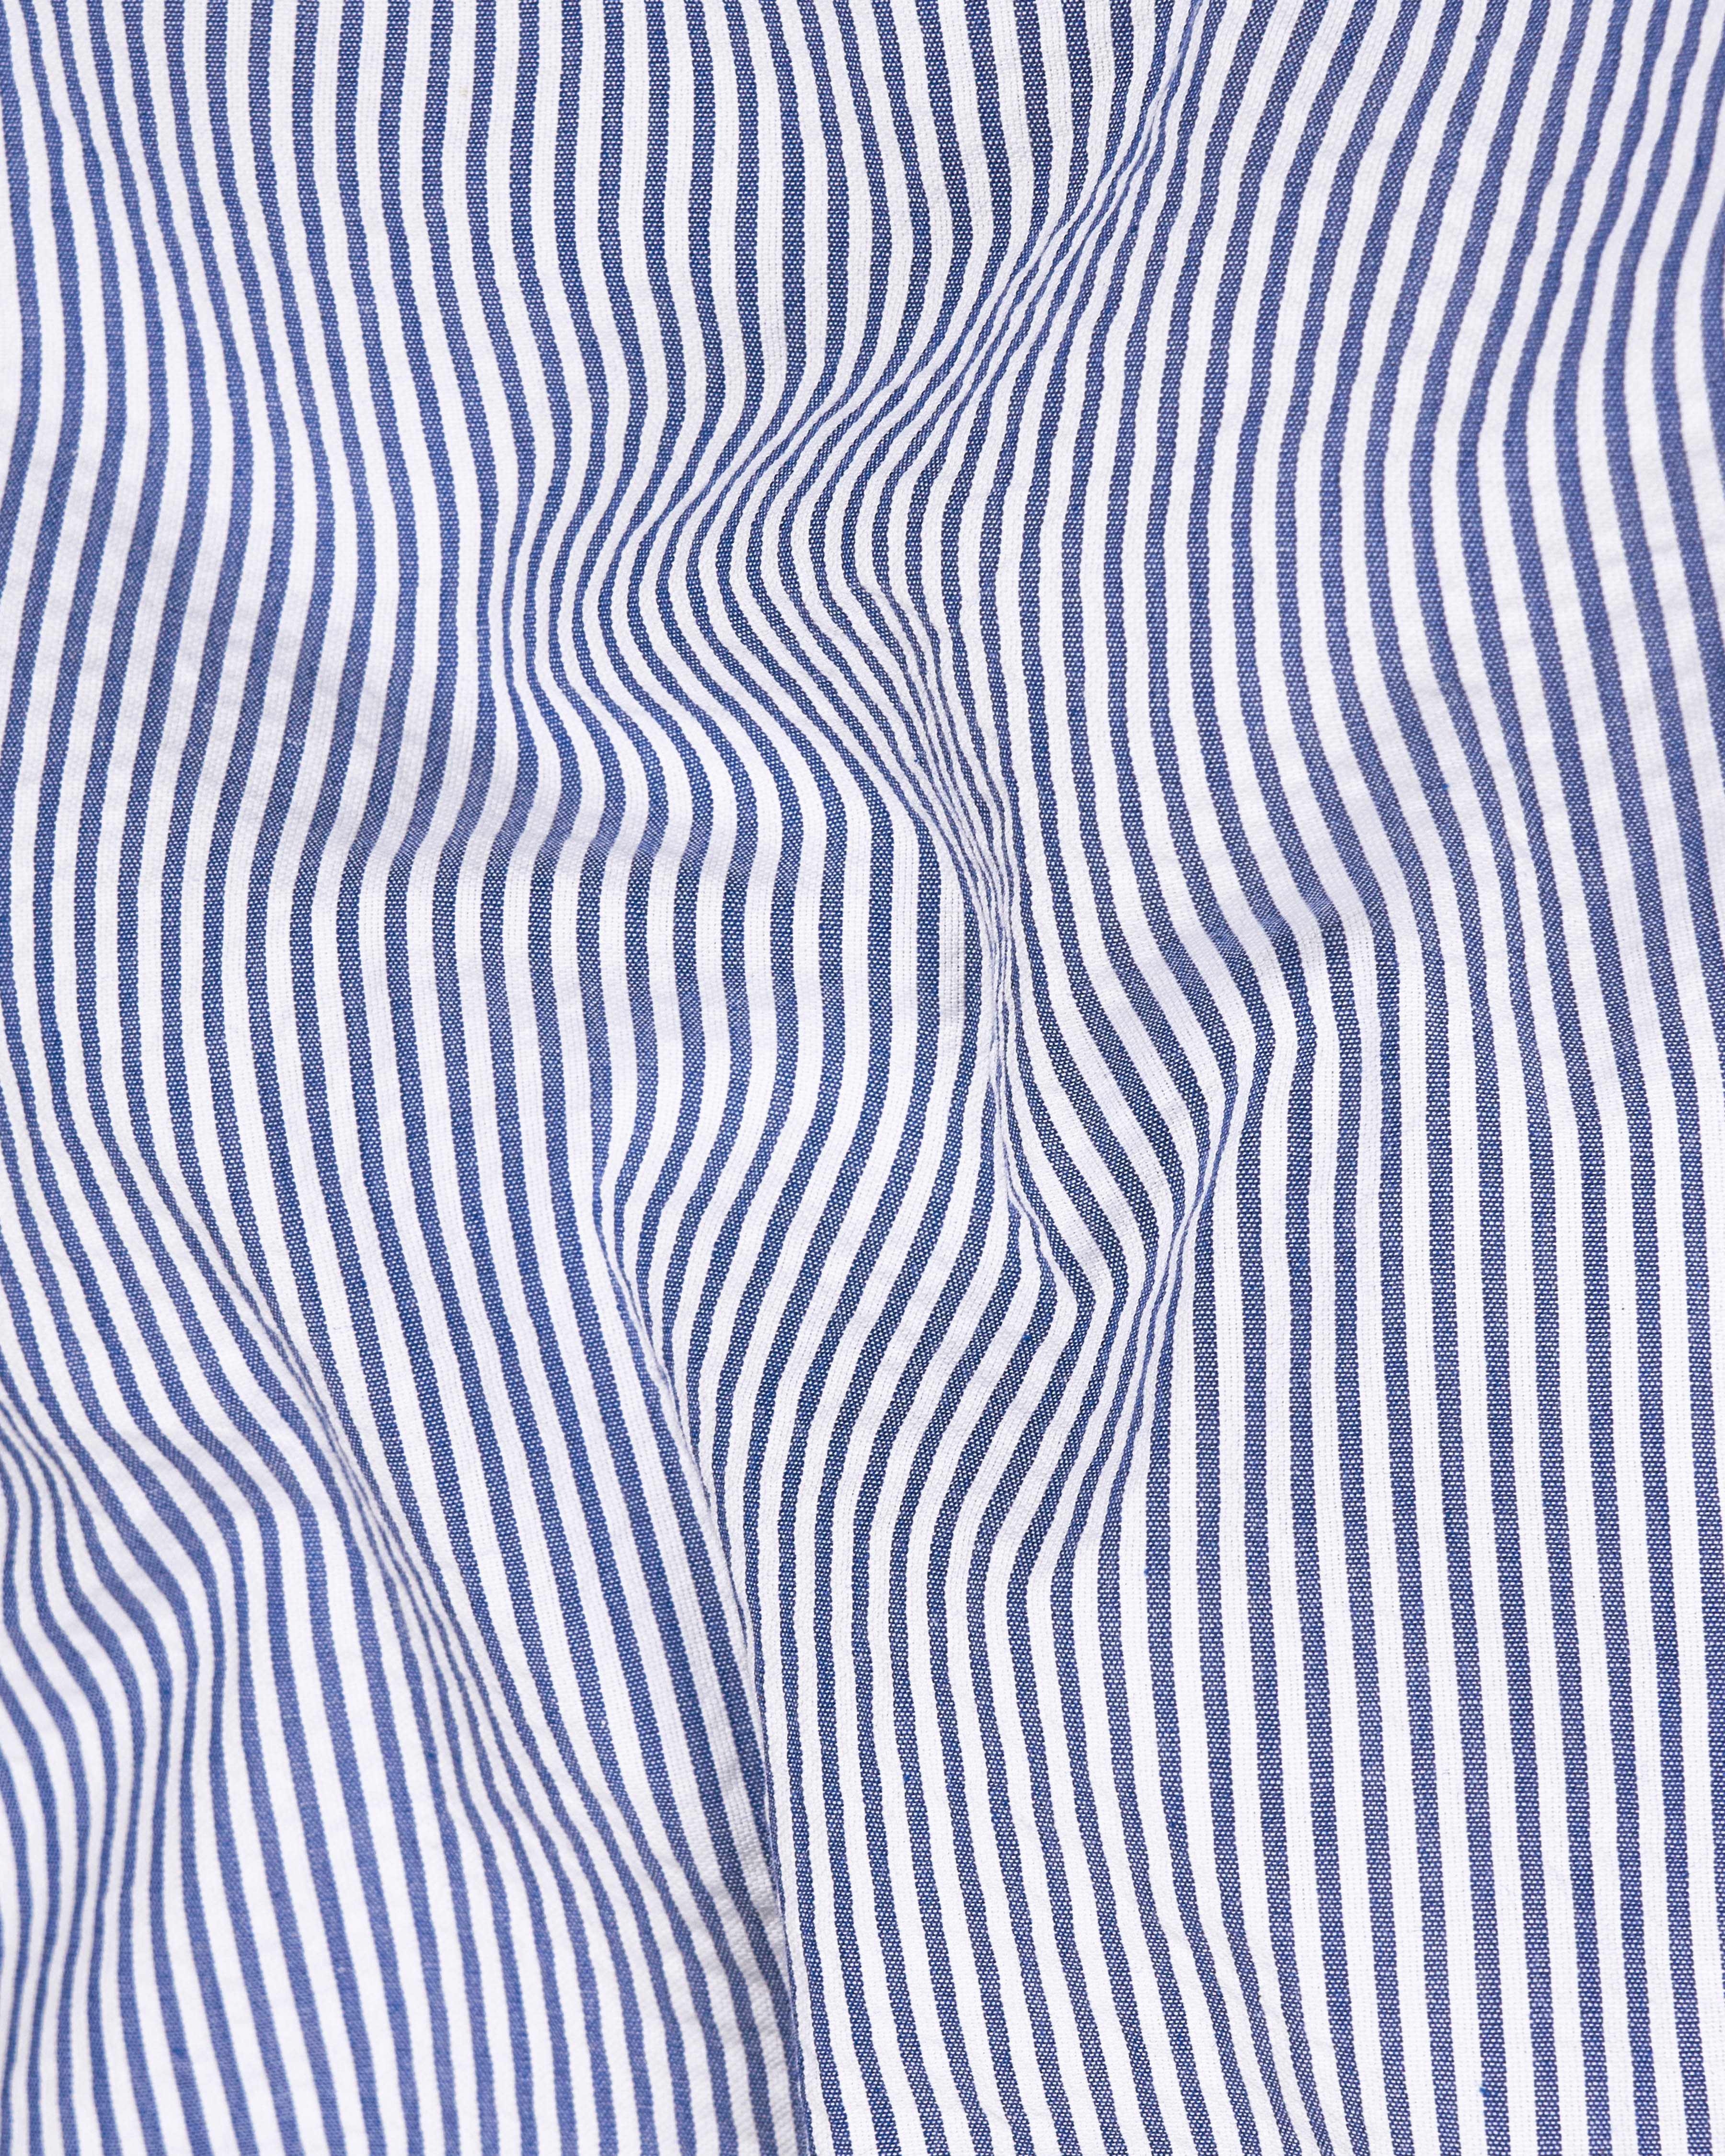 Bayoux Blue with White Pin Striped Seersucker Giza Cotton Shirt 9224-BD-BLE-38,9224-BD-BLE-H-38,9224-BD-BLE-39,9224-BD-BLE-H-39,9224-BD-BLE-40,9224-BD-BLE-H-40,9224-BD-BLE-42,9224-BD-BLE-H-42,9224-BD-BLE-44,9224-BD-BLE-H-44,9224-BD-BLE-46,9224-BD-BLE-H-46,9224-BD-BLE-48,9224-BD-BLE-H-48,9224-BD-BLE-50,9224-BD-BLE-H-50,9224-BD-BLE-52,9224-BD-BLE-H-52\